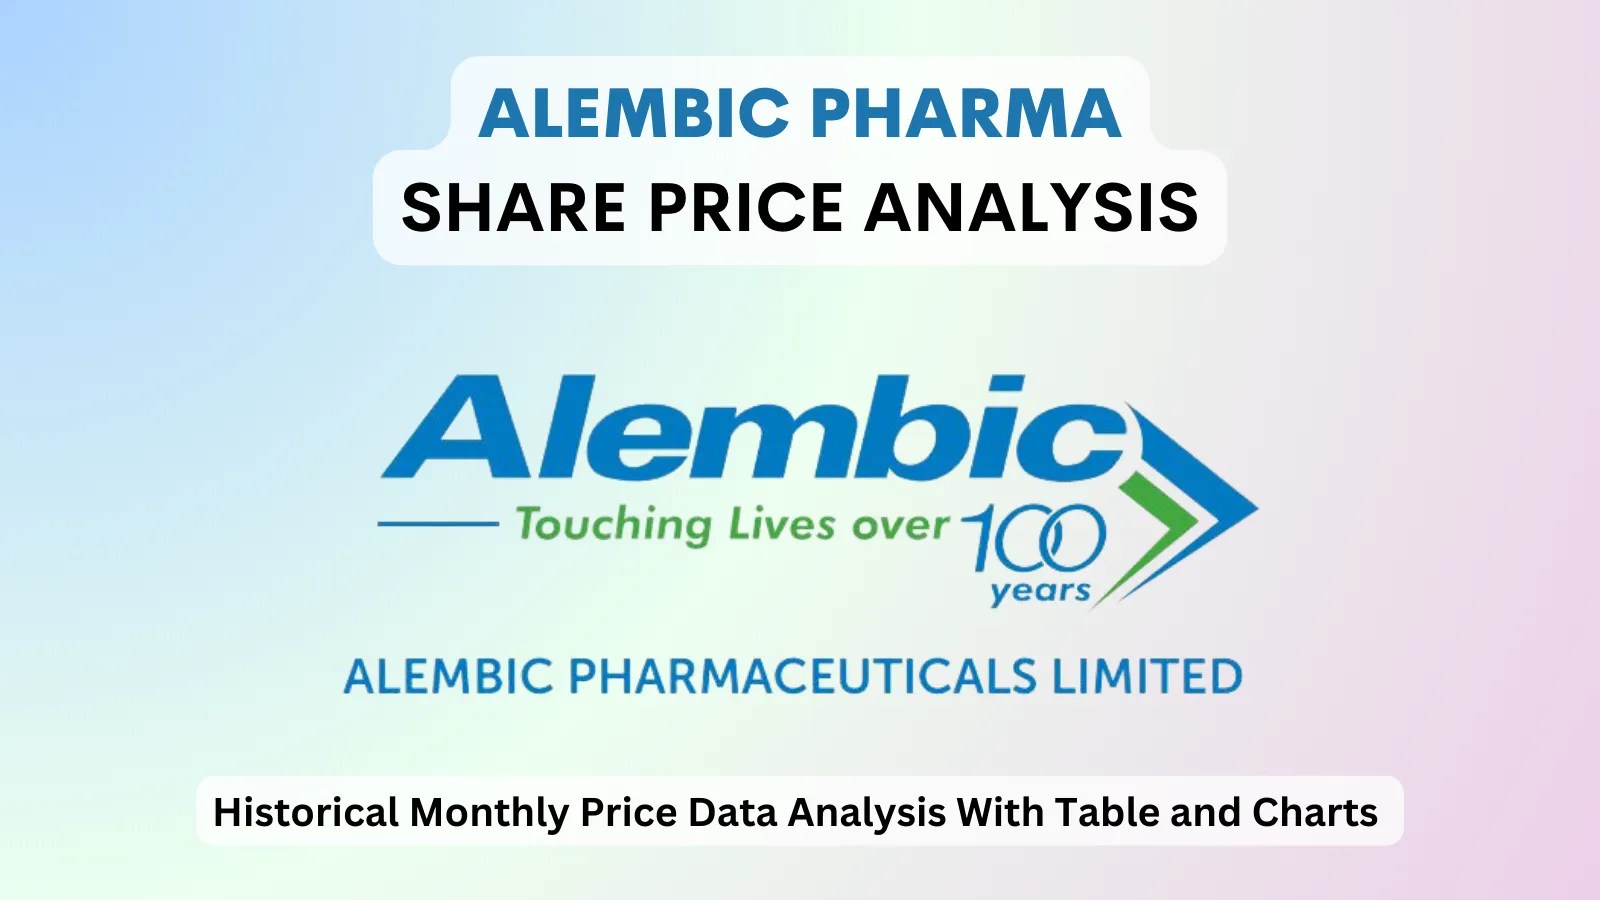 Alembic Pharma share price analysis